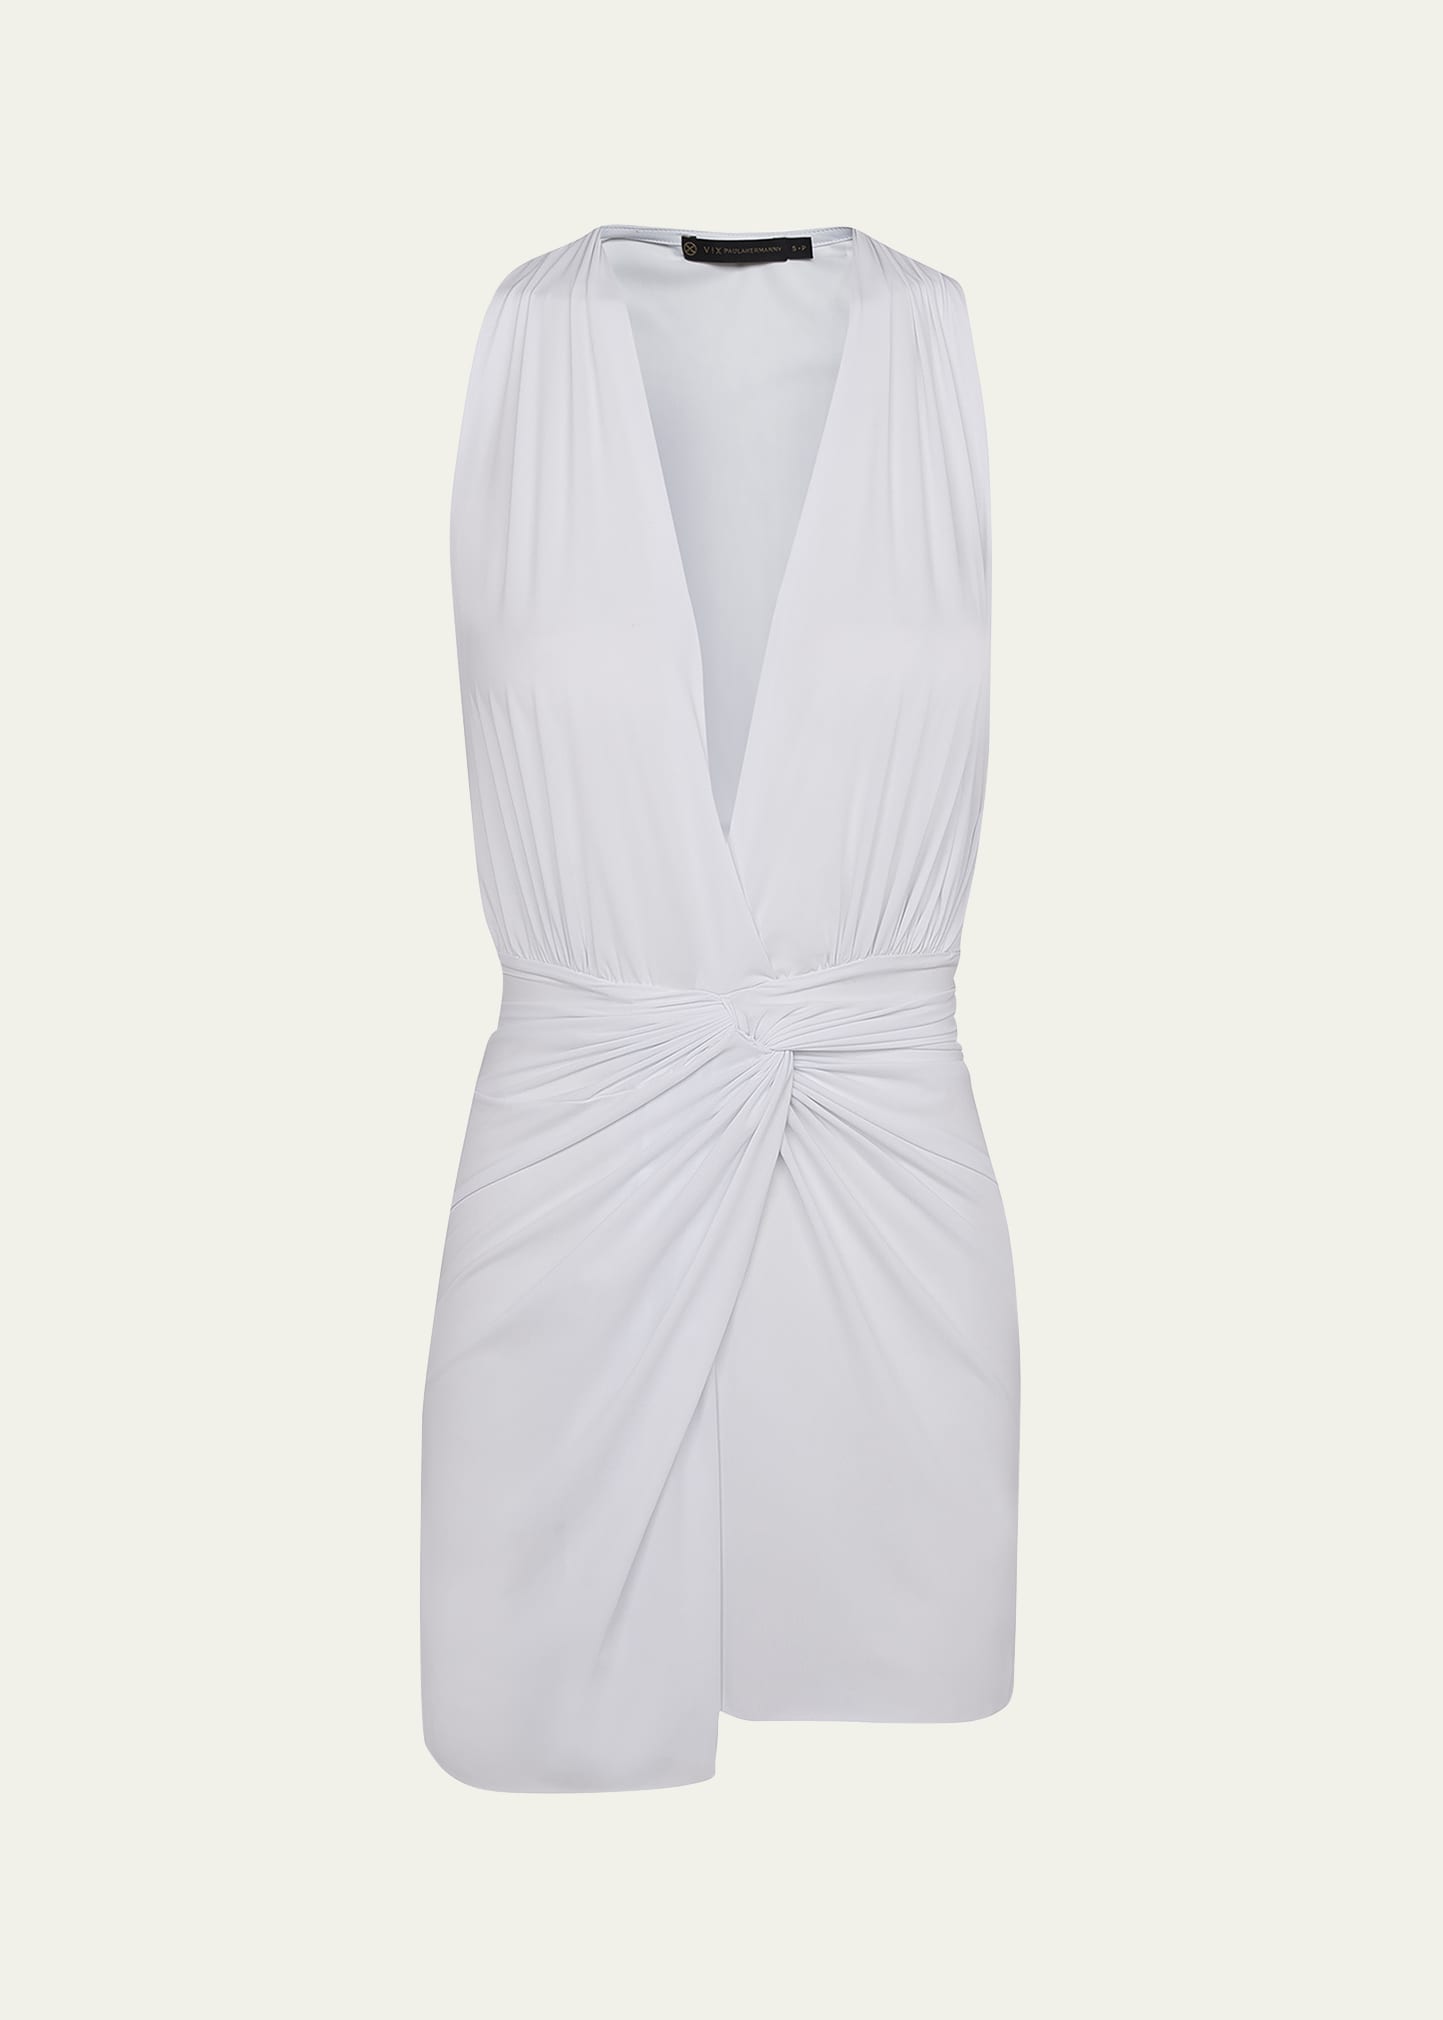 Vix Karina Coverup Mini Dress In White